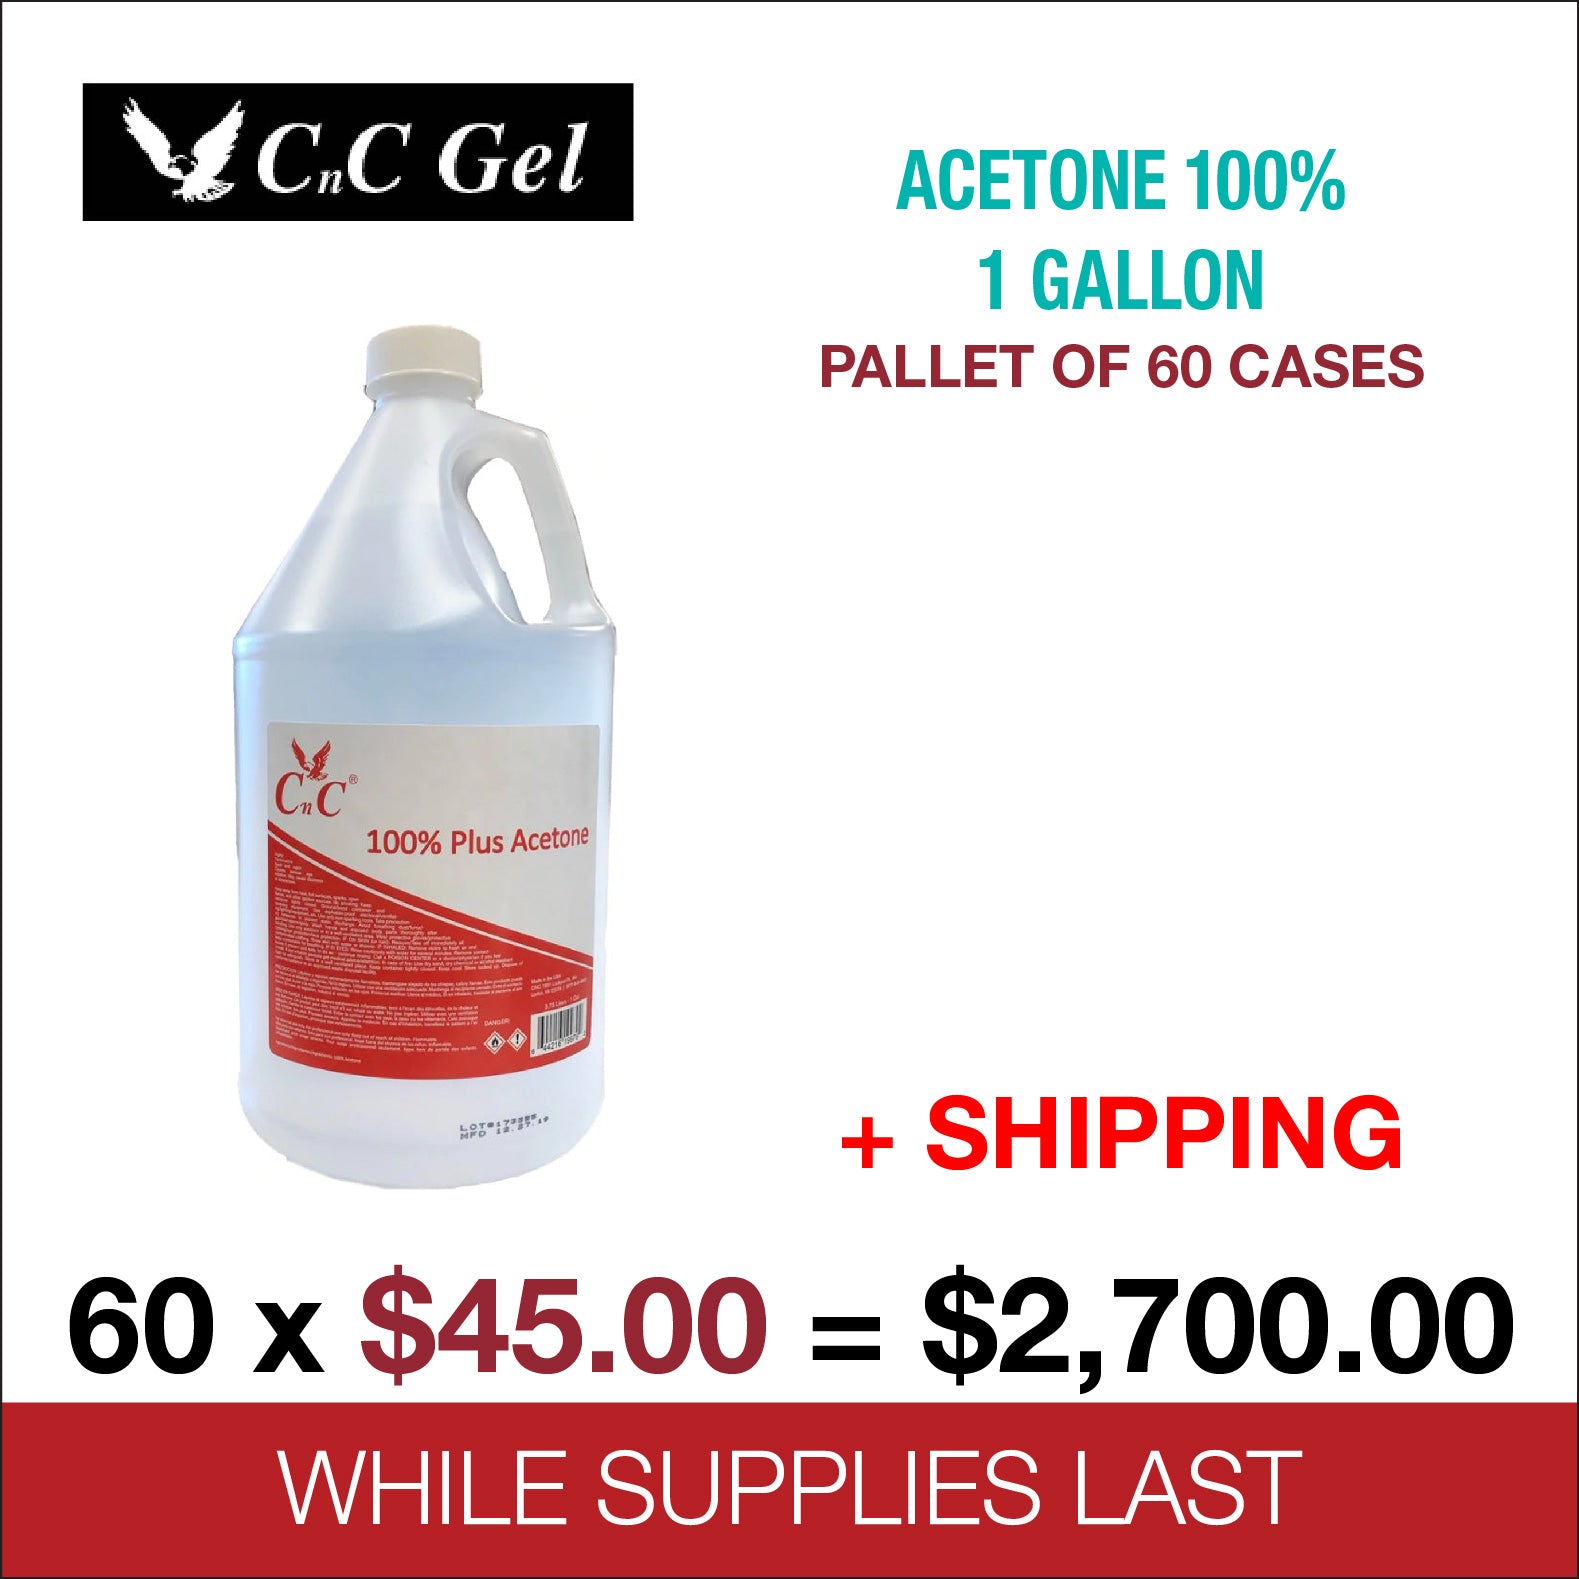 Acetone (1 Gallon)